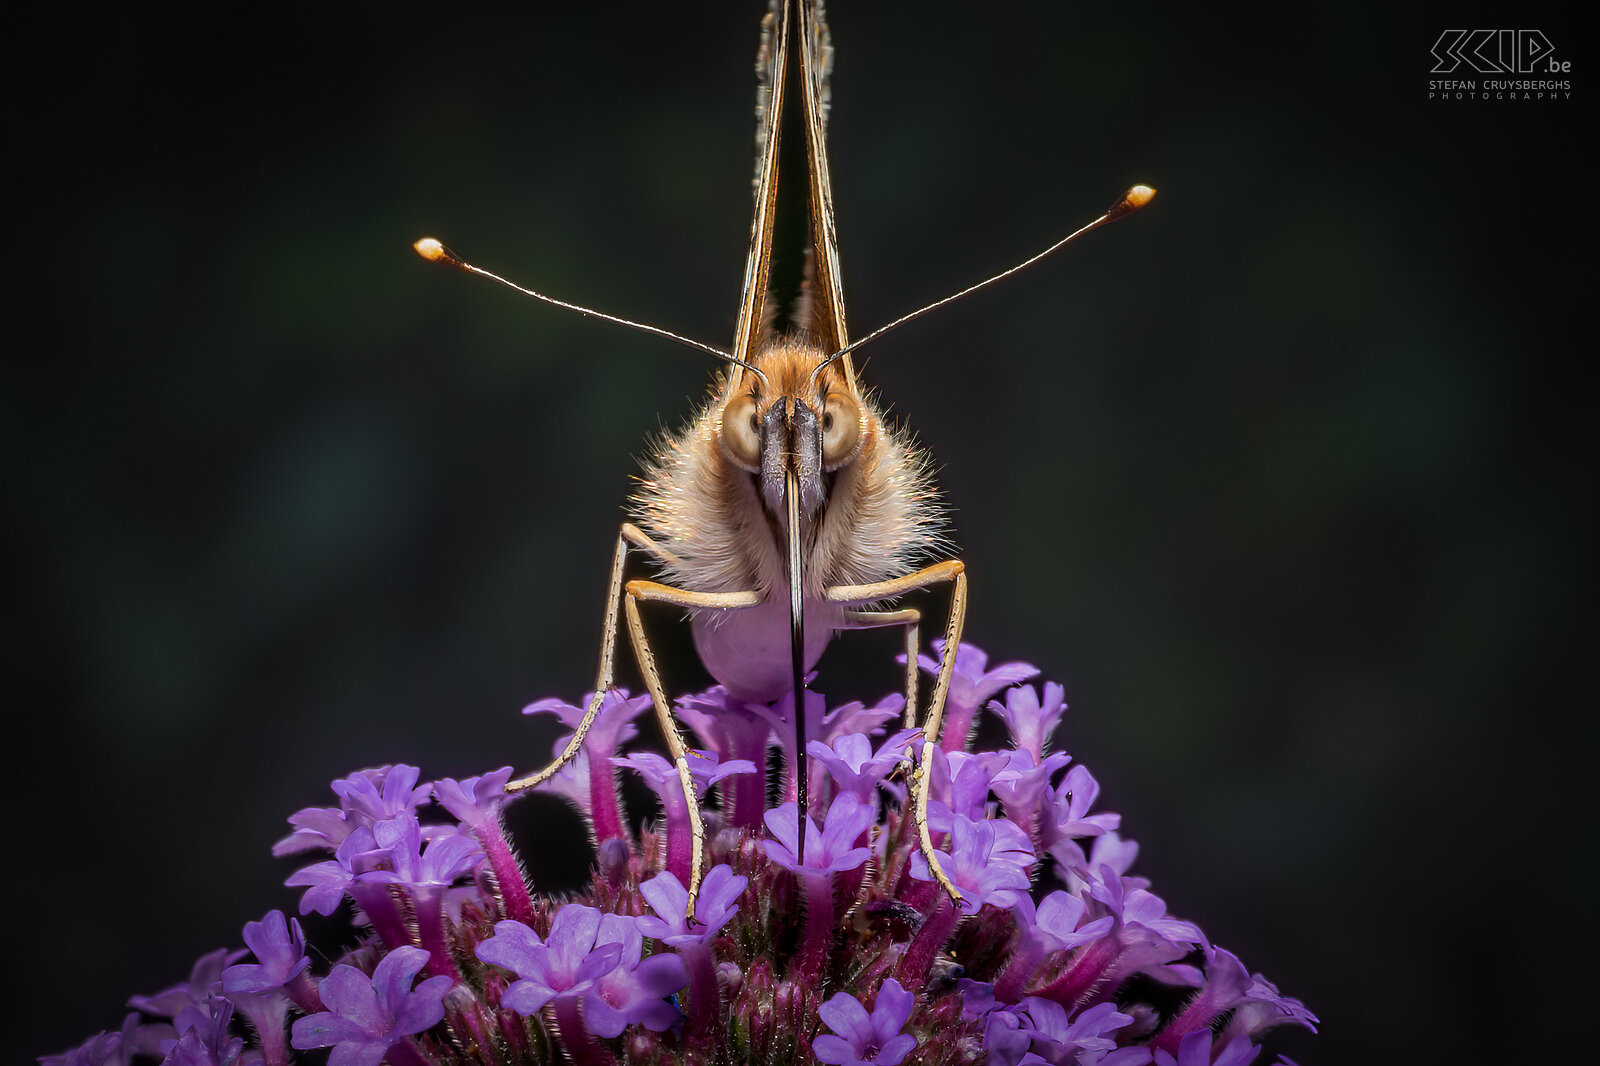 Vlinders - Distelvlinder De distelvlinder (Vanessa cardui) is ook een prachtige vlinder die ik een paar weken lang dagelijks in onze tuin kon terugvinden de voorbije zomer. Ik kon er een paar prachtige close-ups van maken. Stefan Cruysberghs